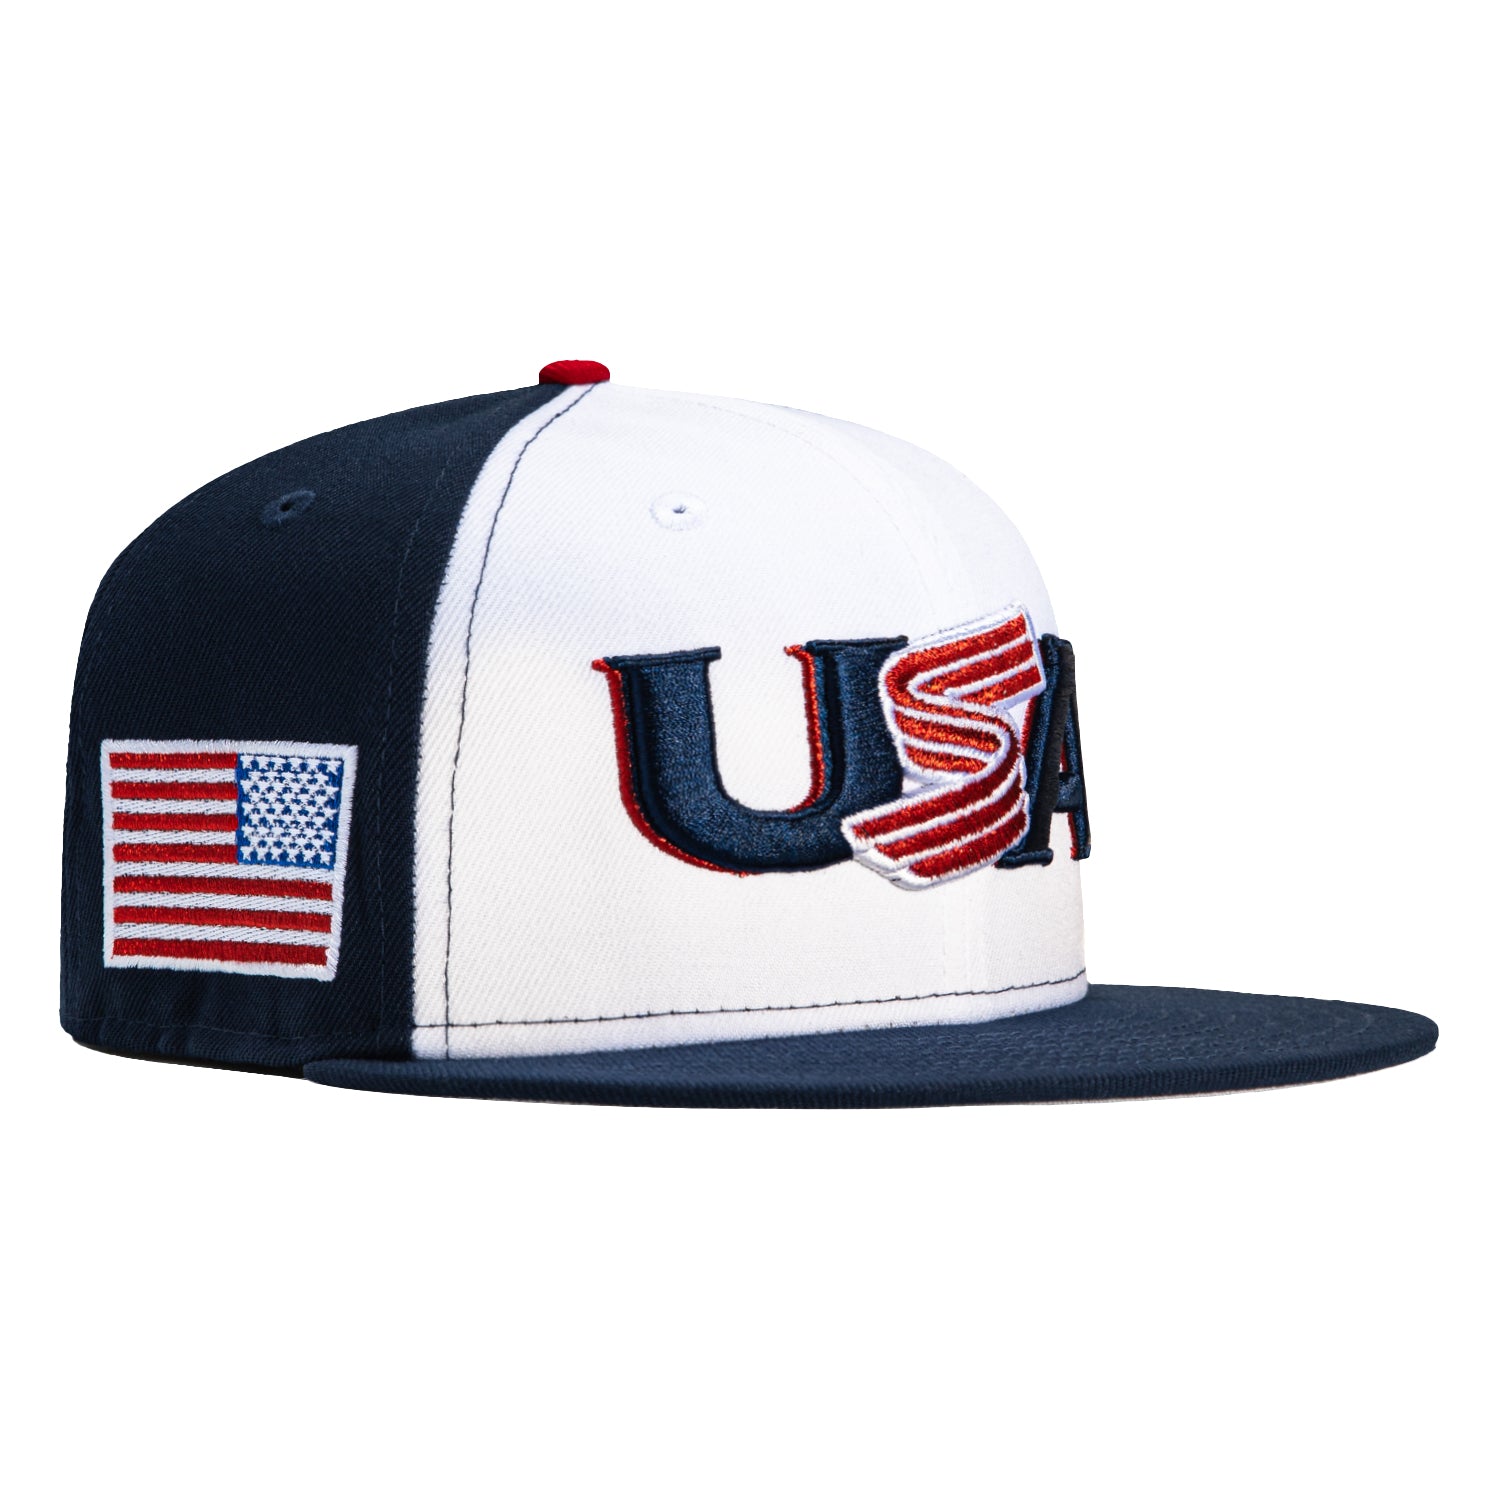 New Era 59FIFTY 2023 World Baseball Classic USA Fitted Hat 7 7/8